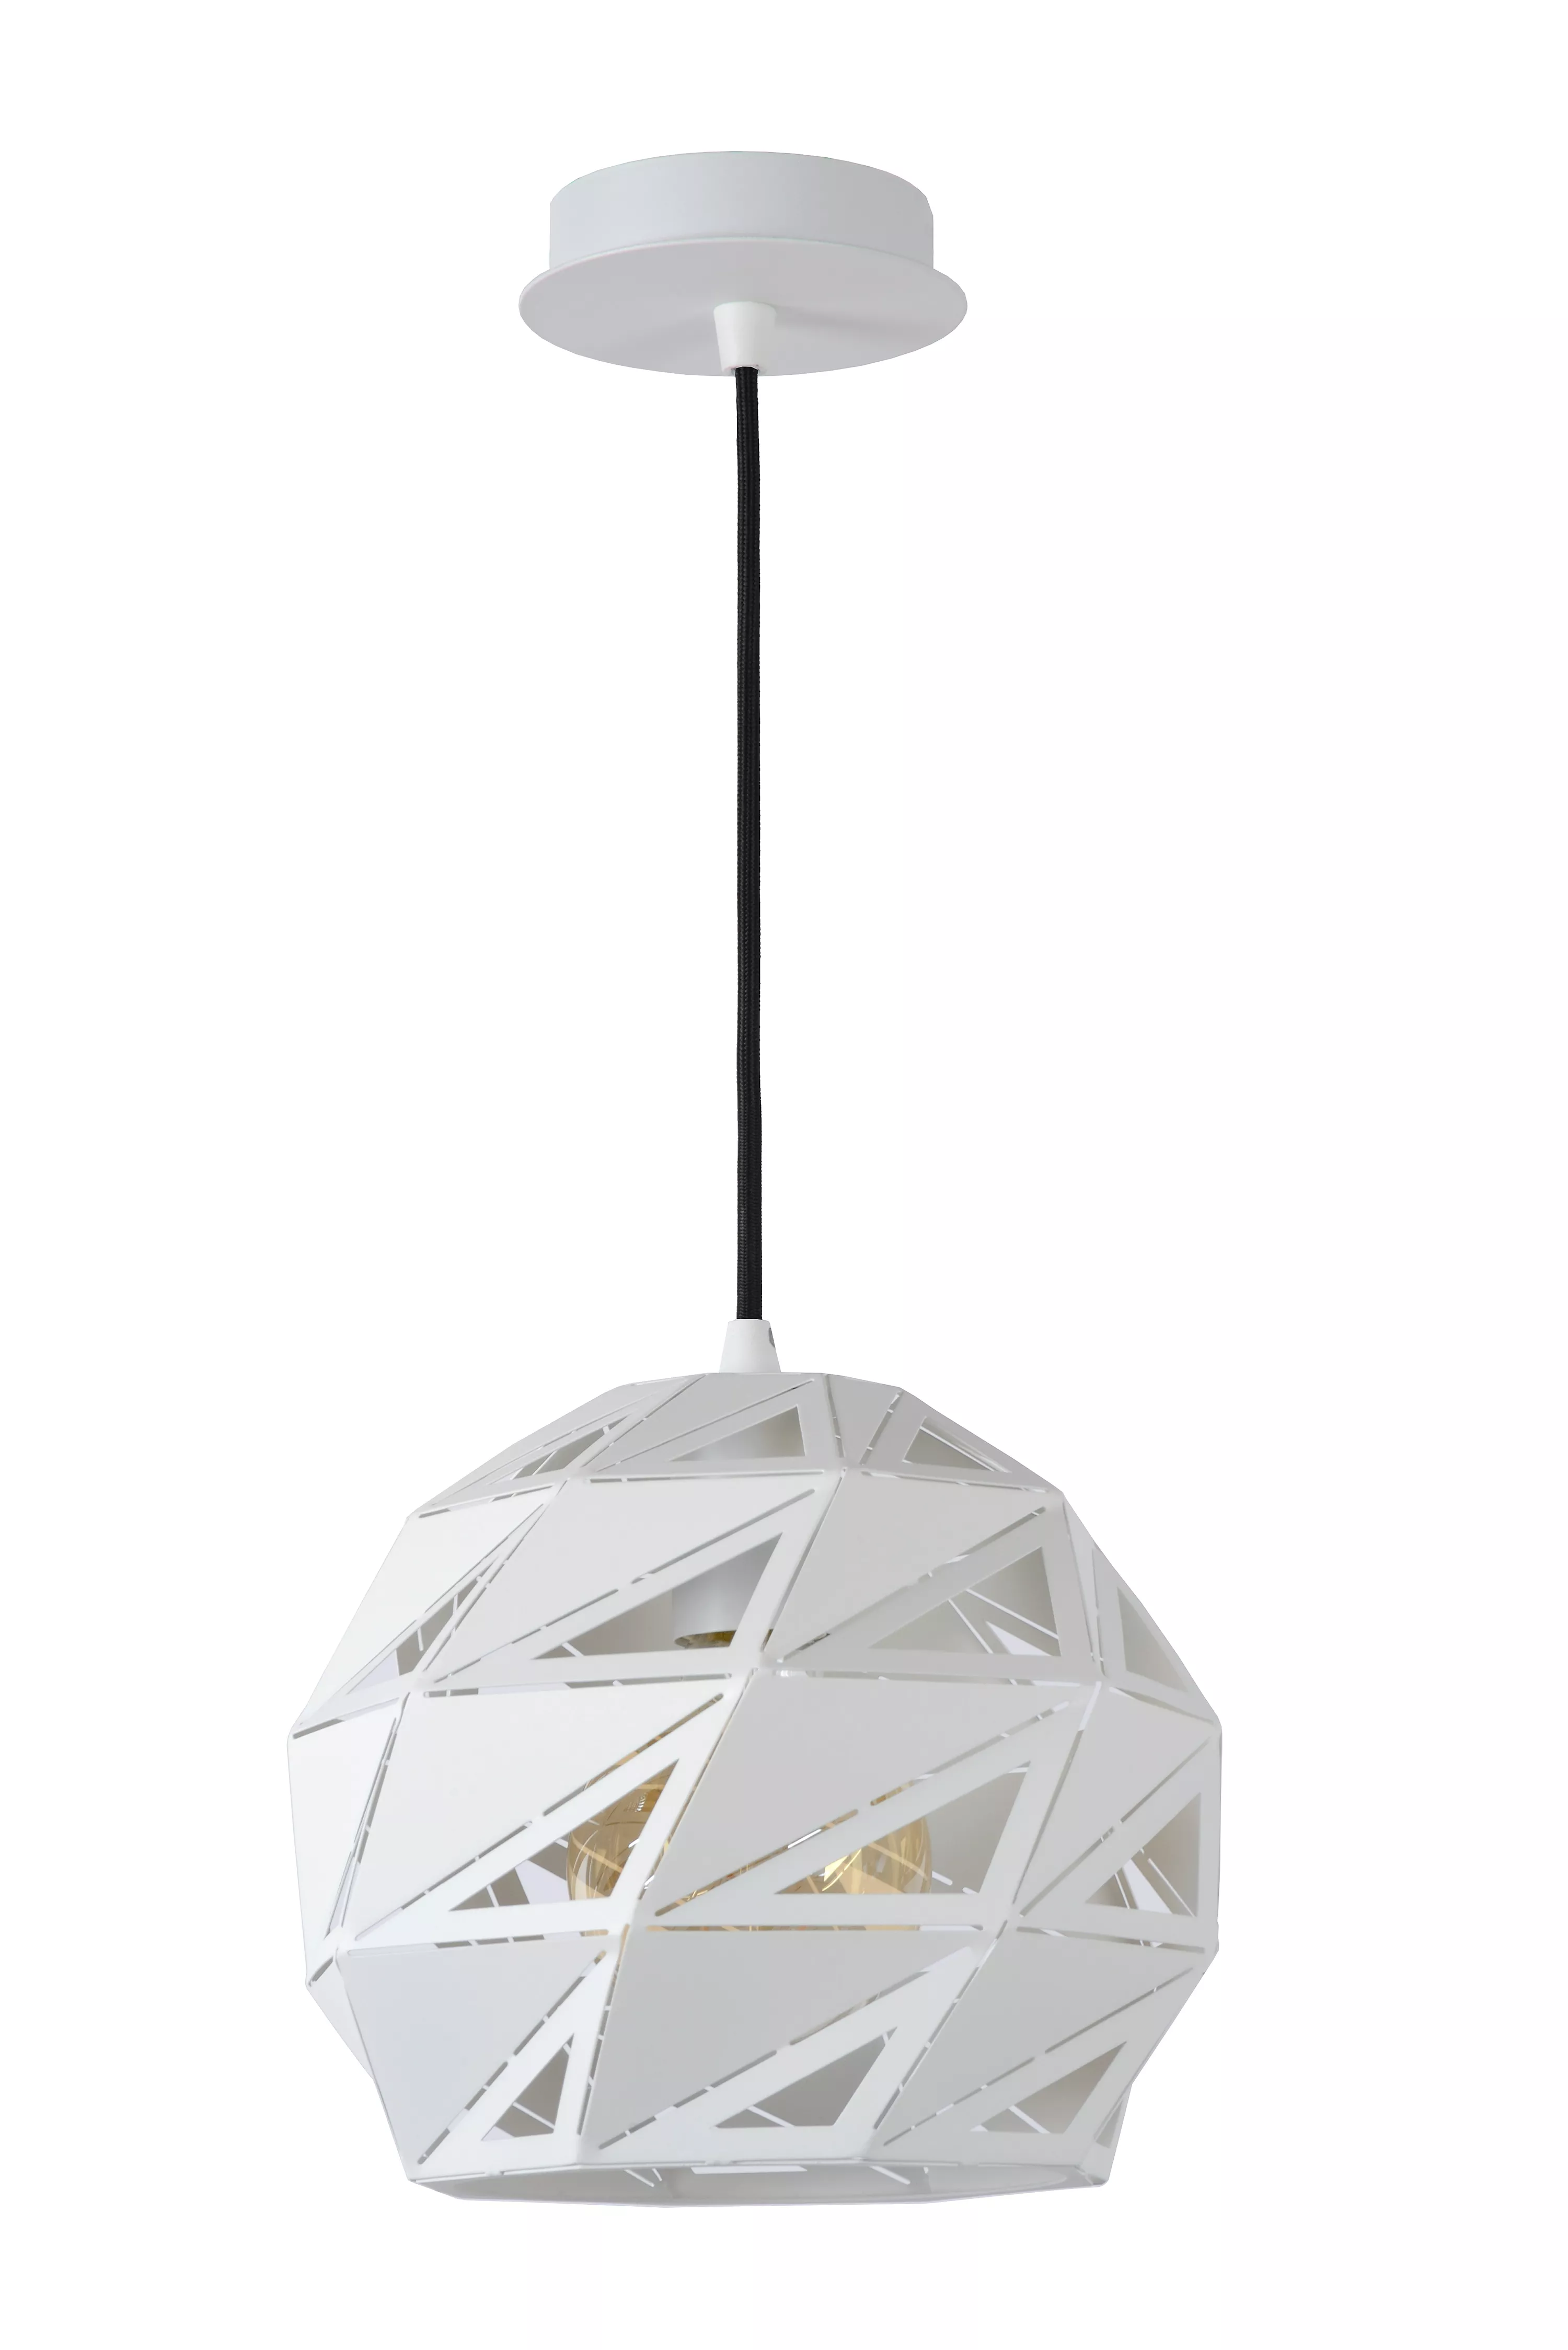 Závesné svietidlo Malunga od Lucide s trojuholníkovou perforáciou v bielom vyhotovení rozžiari akýkoľvek interiér.